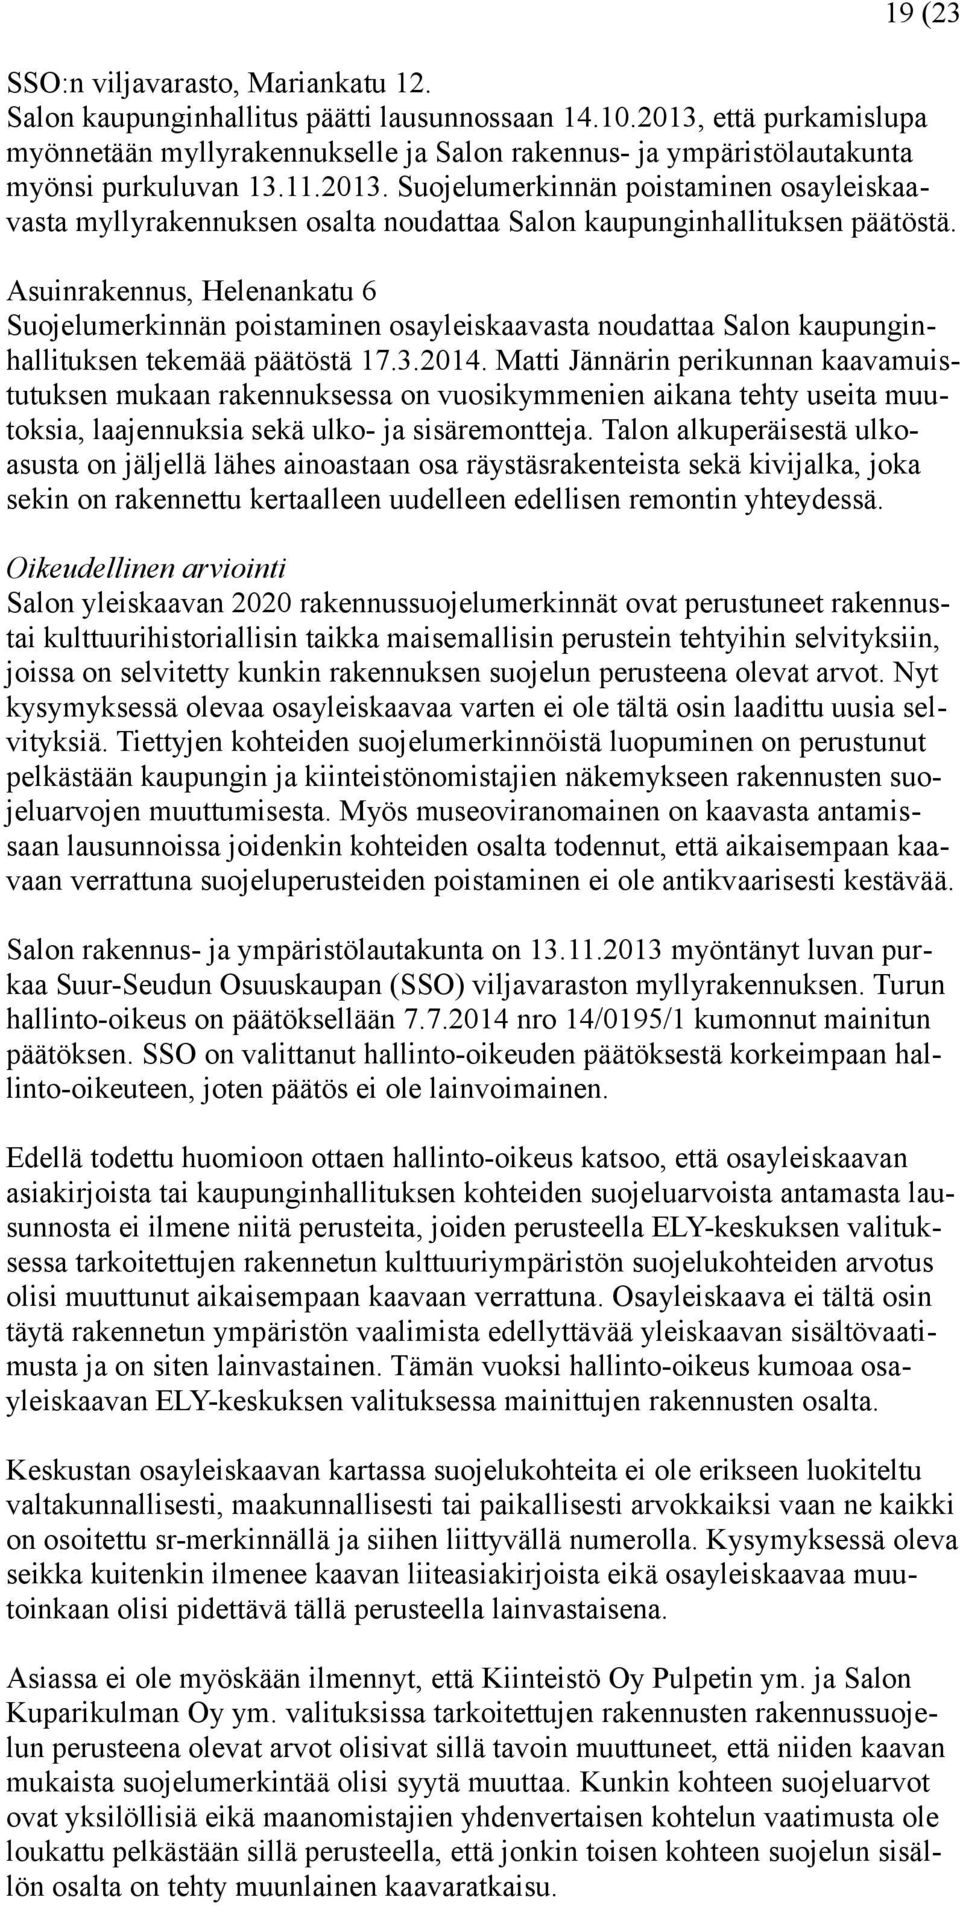 Asuinrakennus, Helenankatu 6 Suojelumerkinnän poistaminen osayleiskaavasta noudattaa Salon kaupunginhallituksen tekemää päätöstä 17.3.2014.